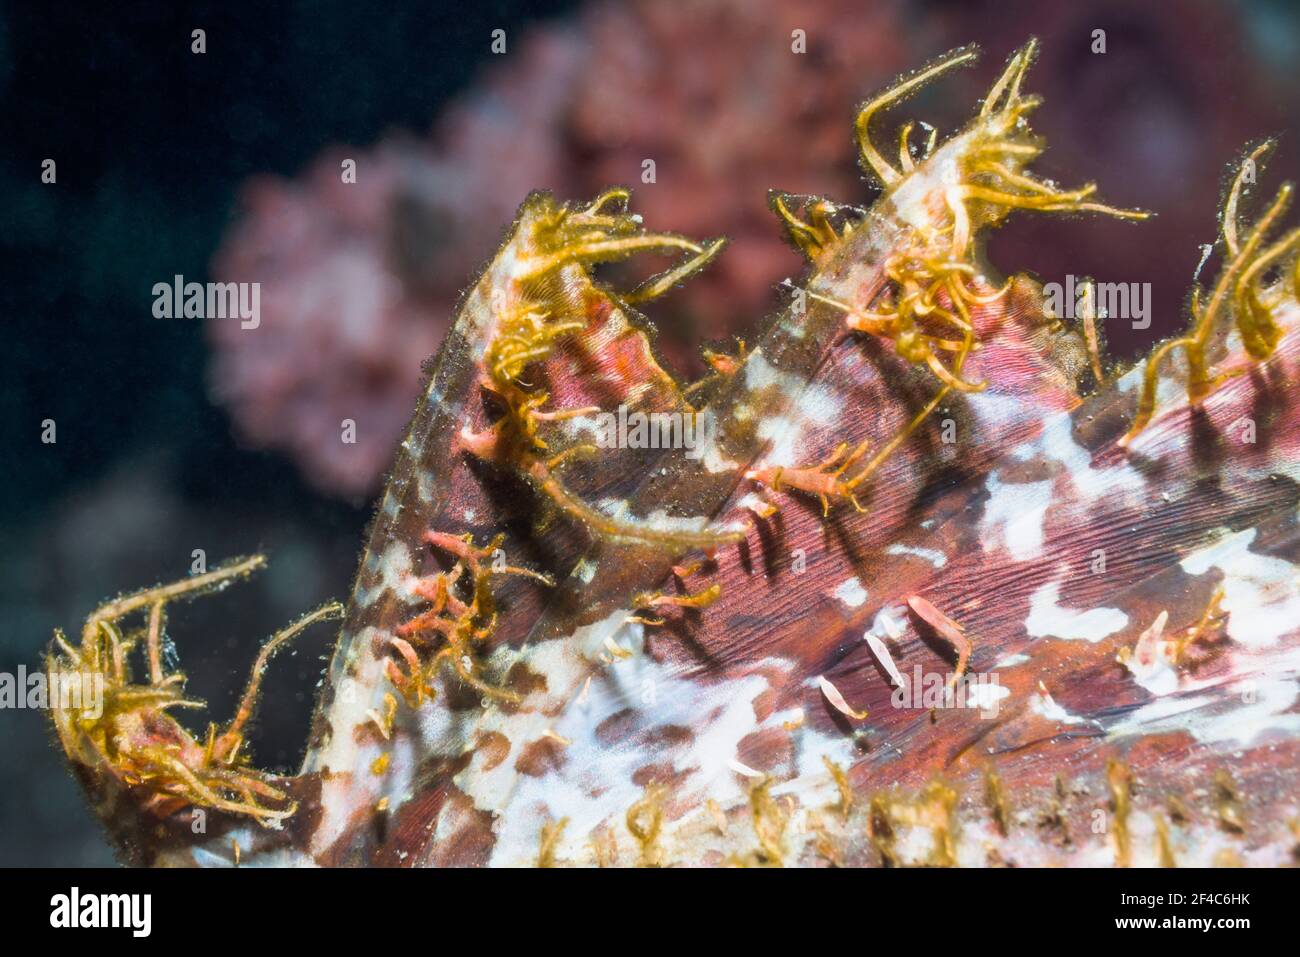 Puntas de las espinas venenosas en la aleta dorsal de un pez escorpiones. Tulamben, Bali, Indonesia. Foto de stock